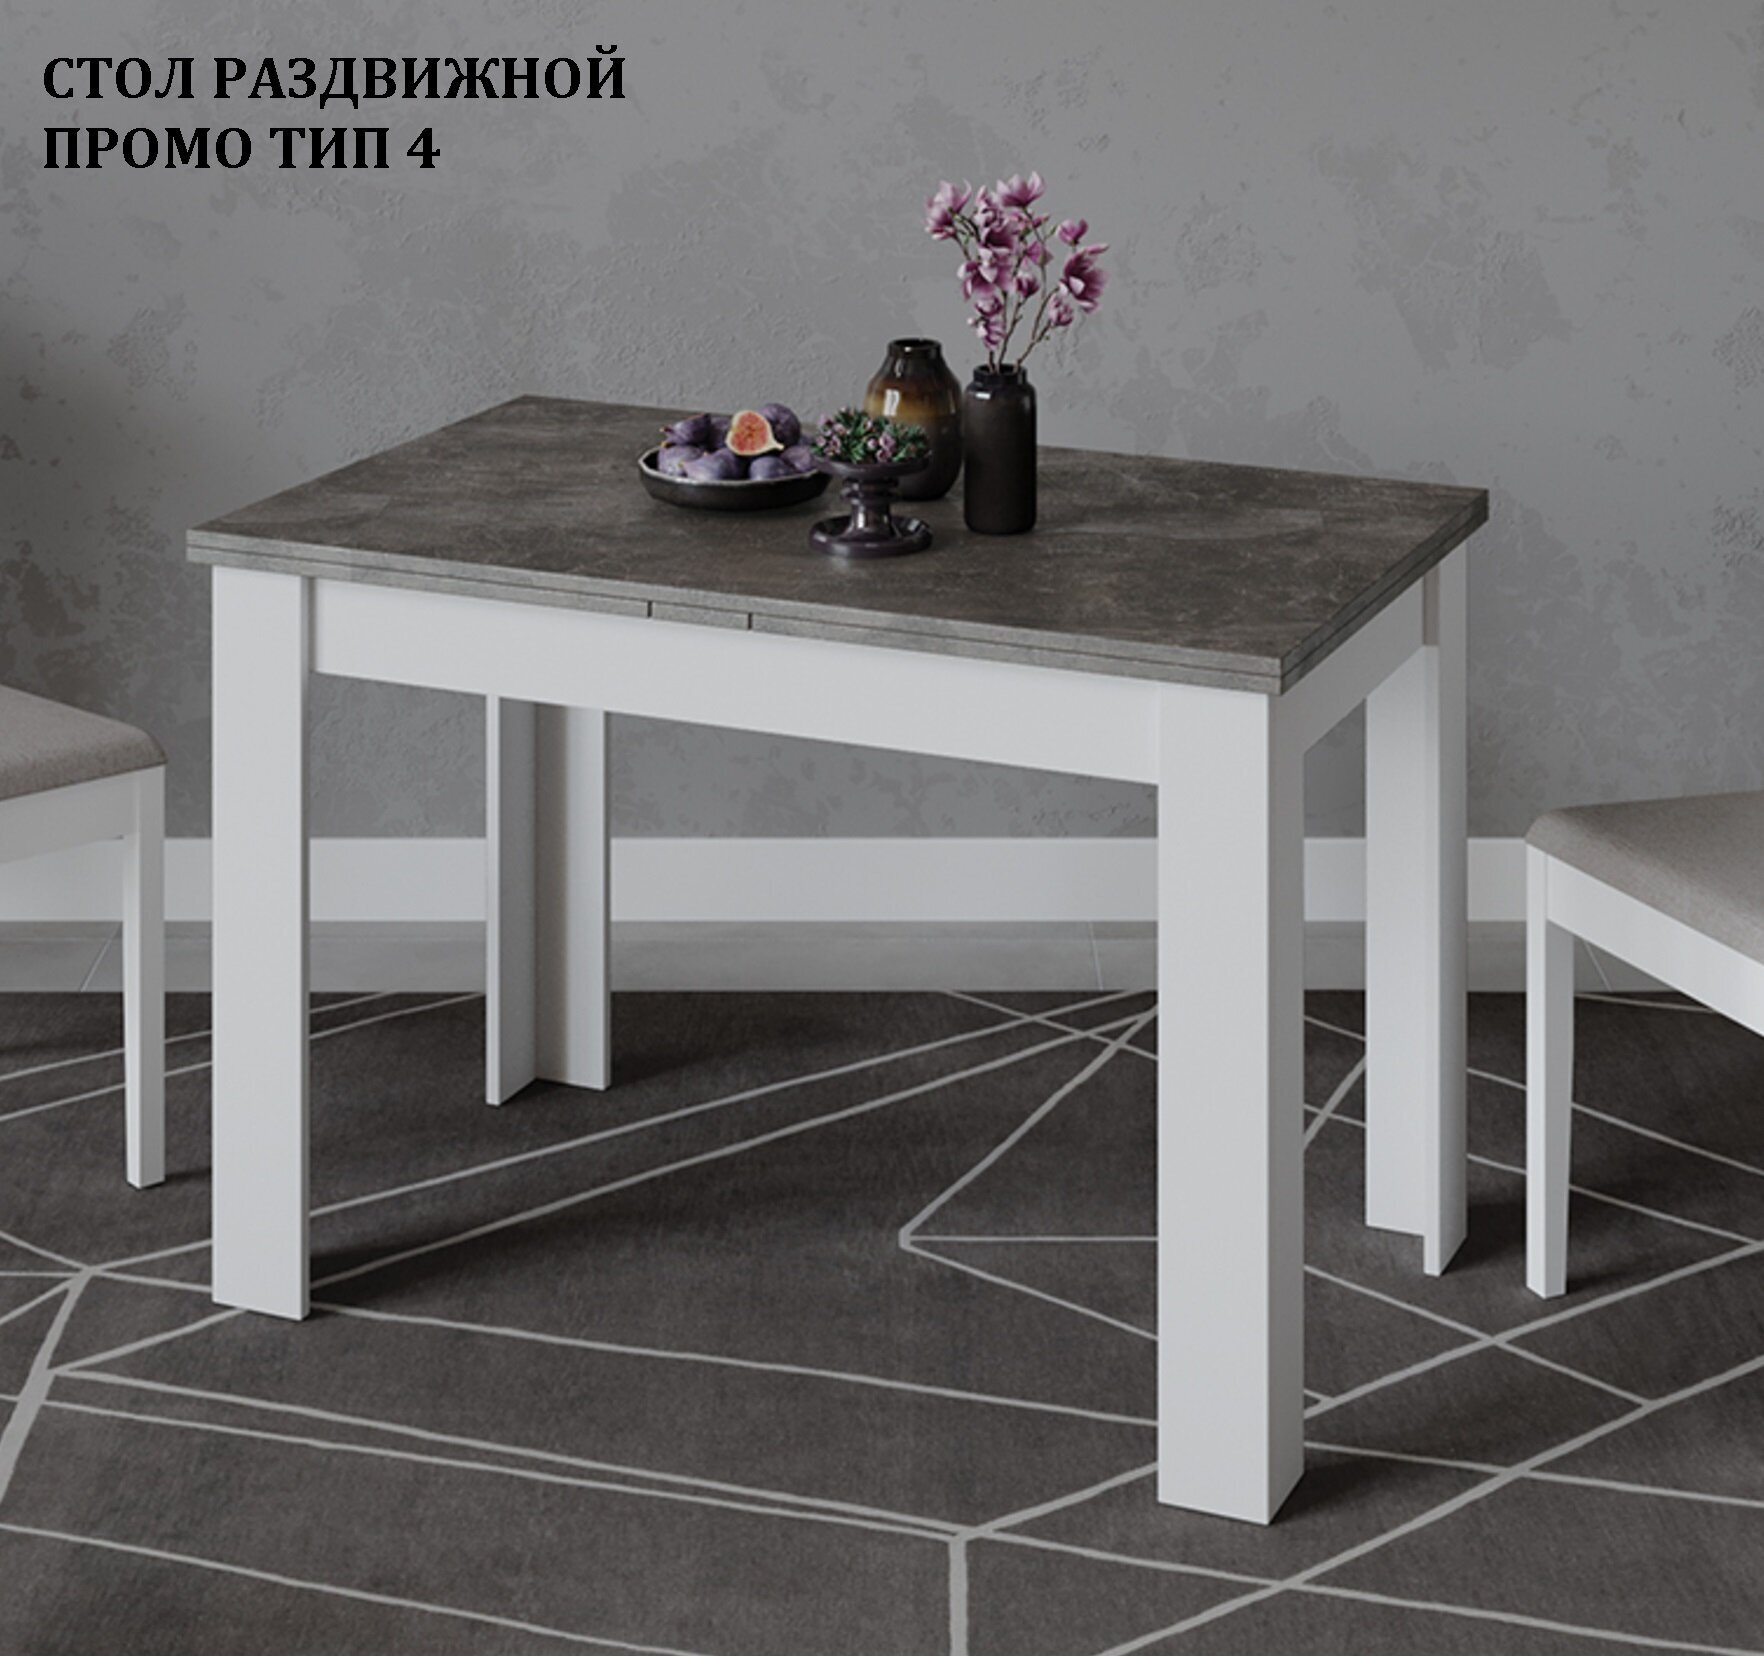 Стол кухонный раздвижной, стол обеденный белый серый (ВхДхГ) 75х110х67 см, Промо Тип 4